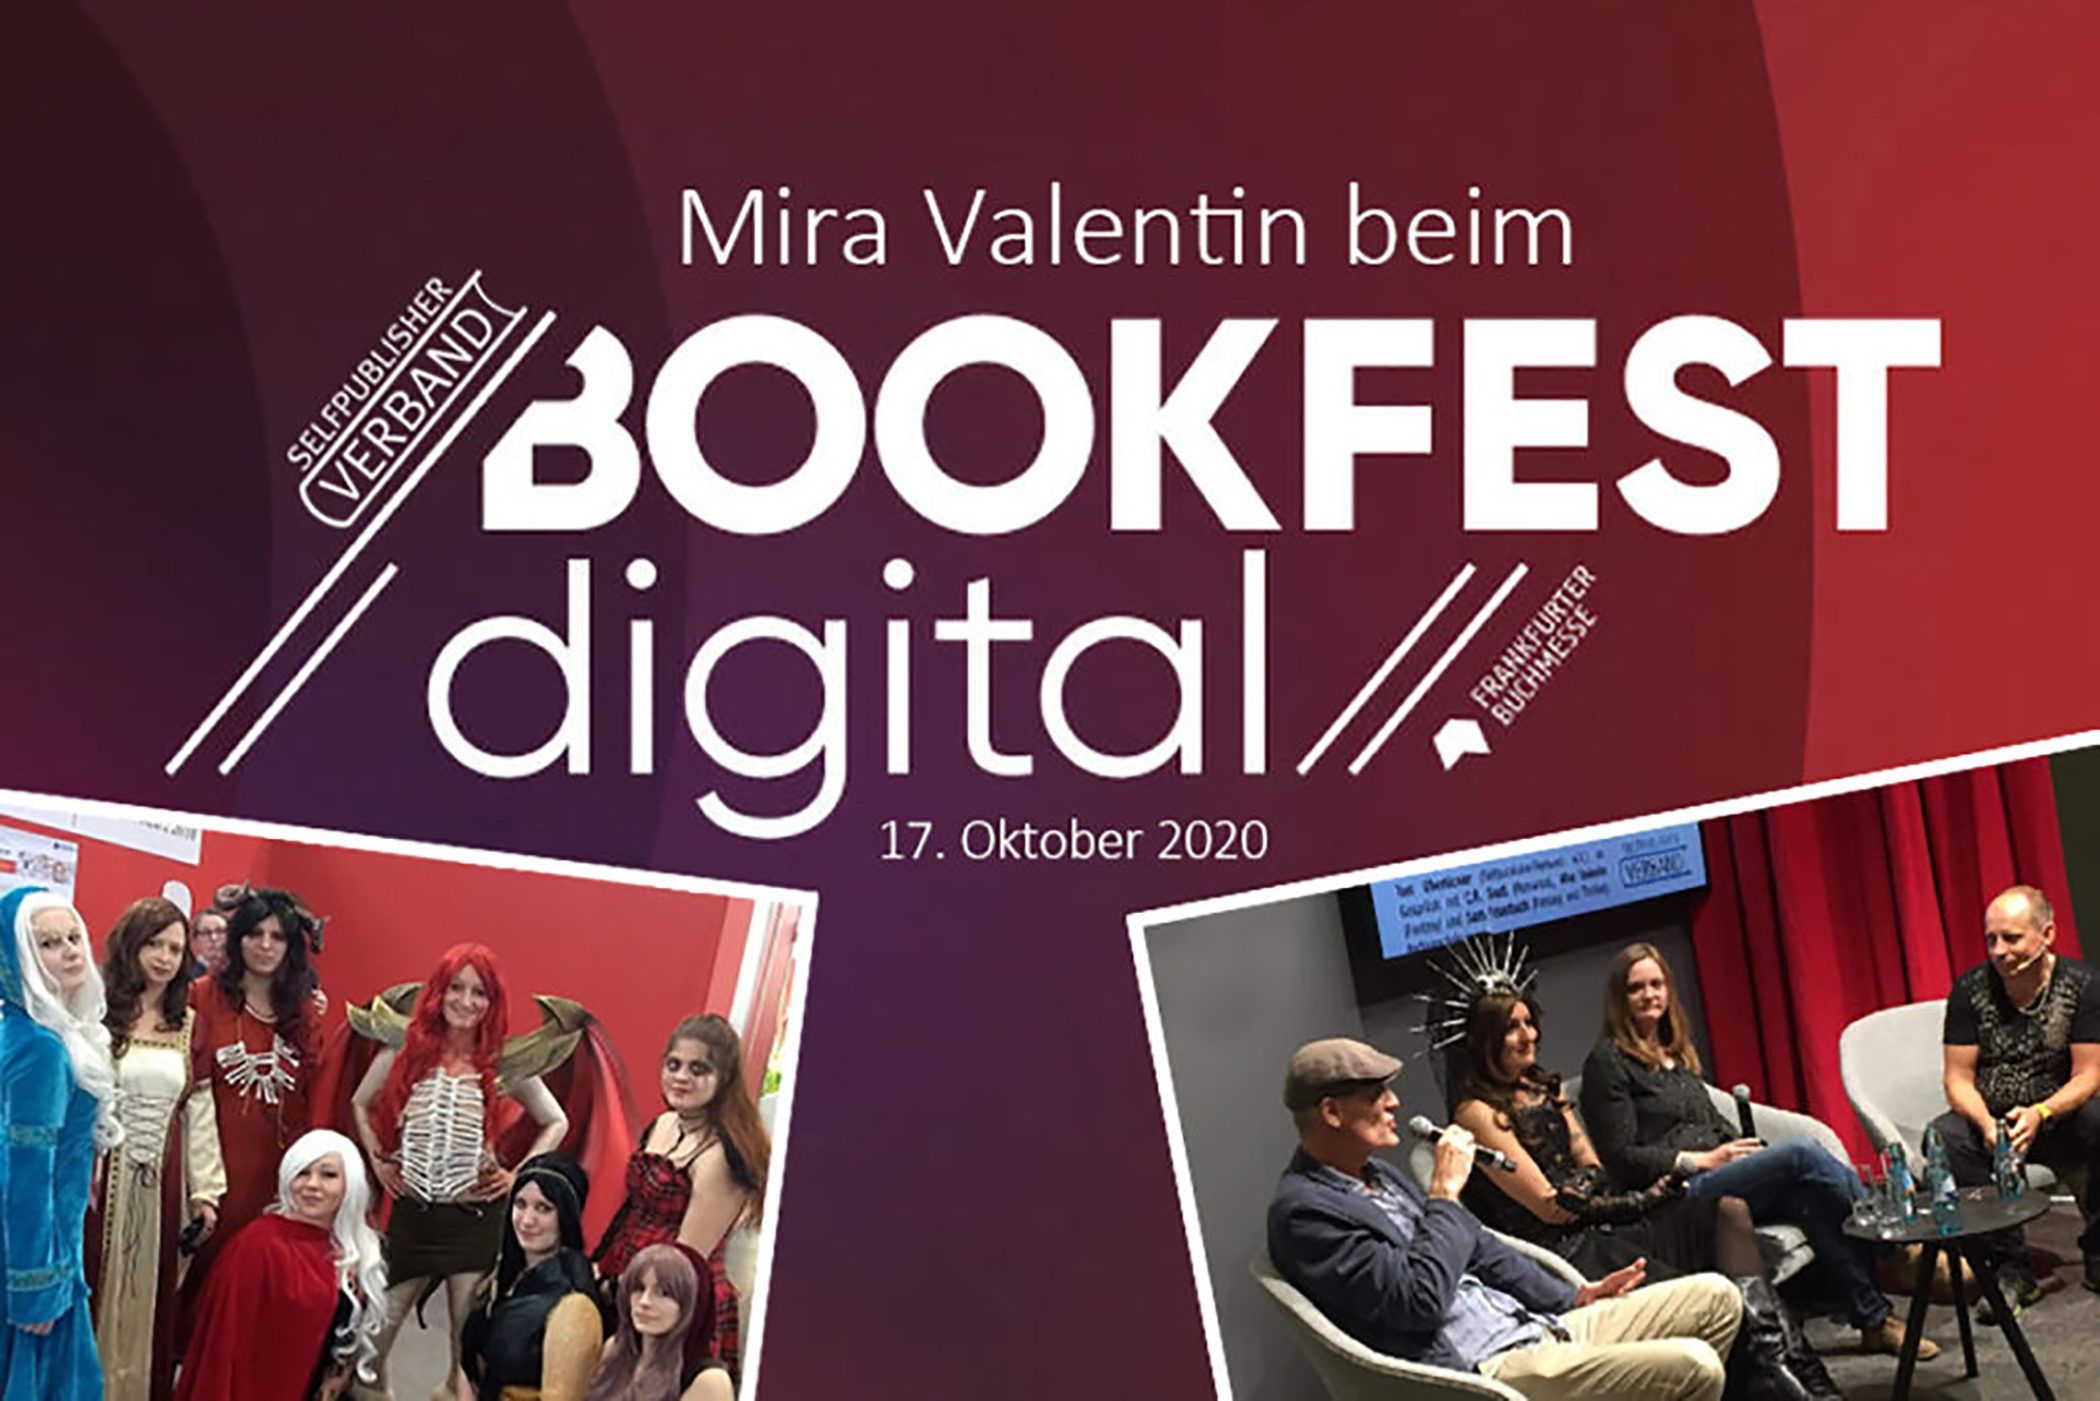 Mira Valentin auf dem BOOKFEST digital der Frankfurter Buchmesse